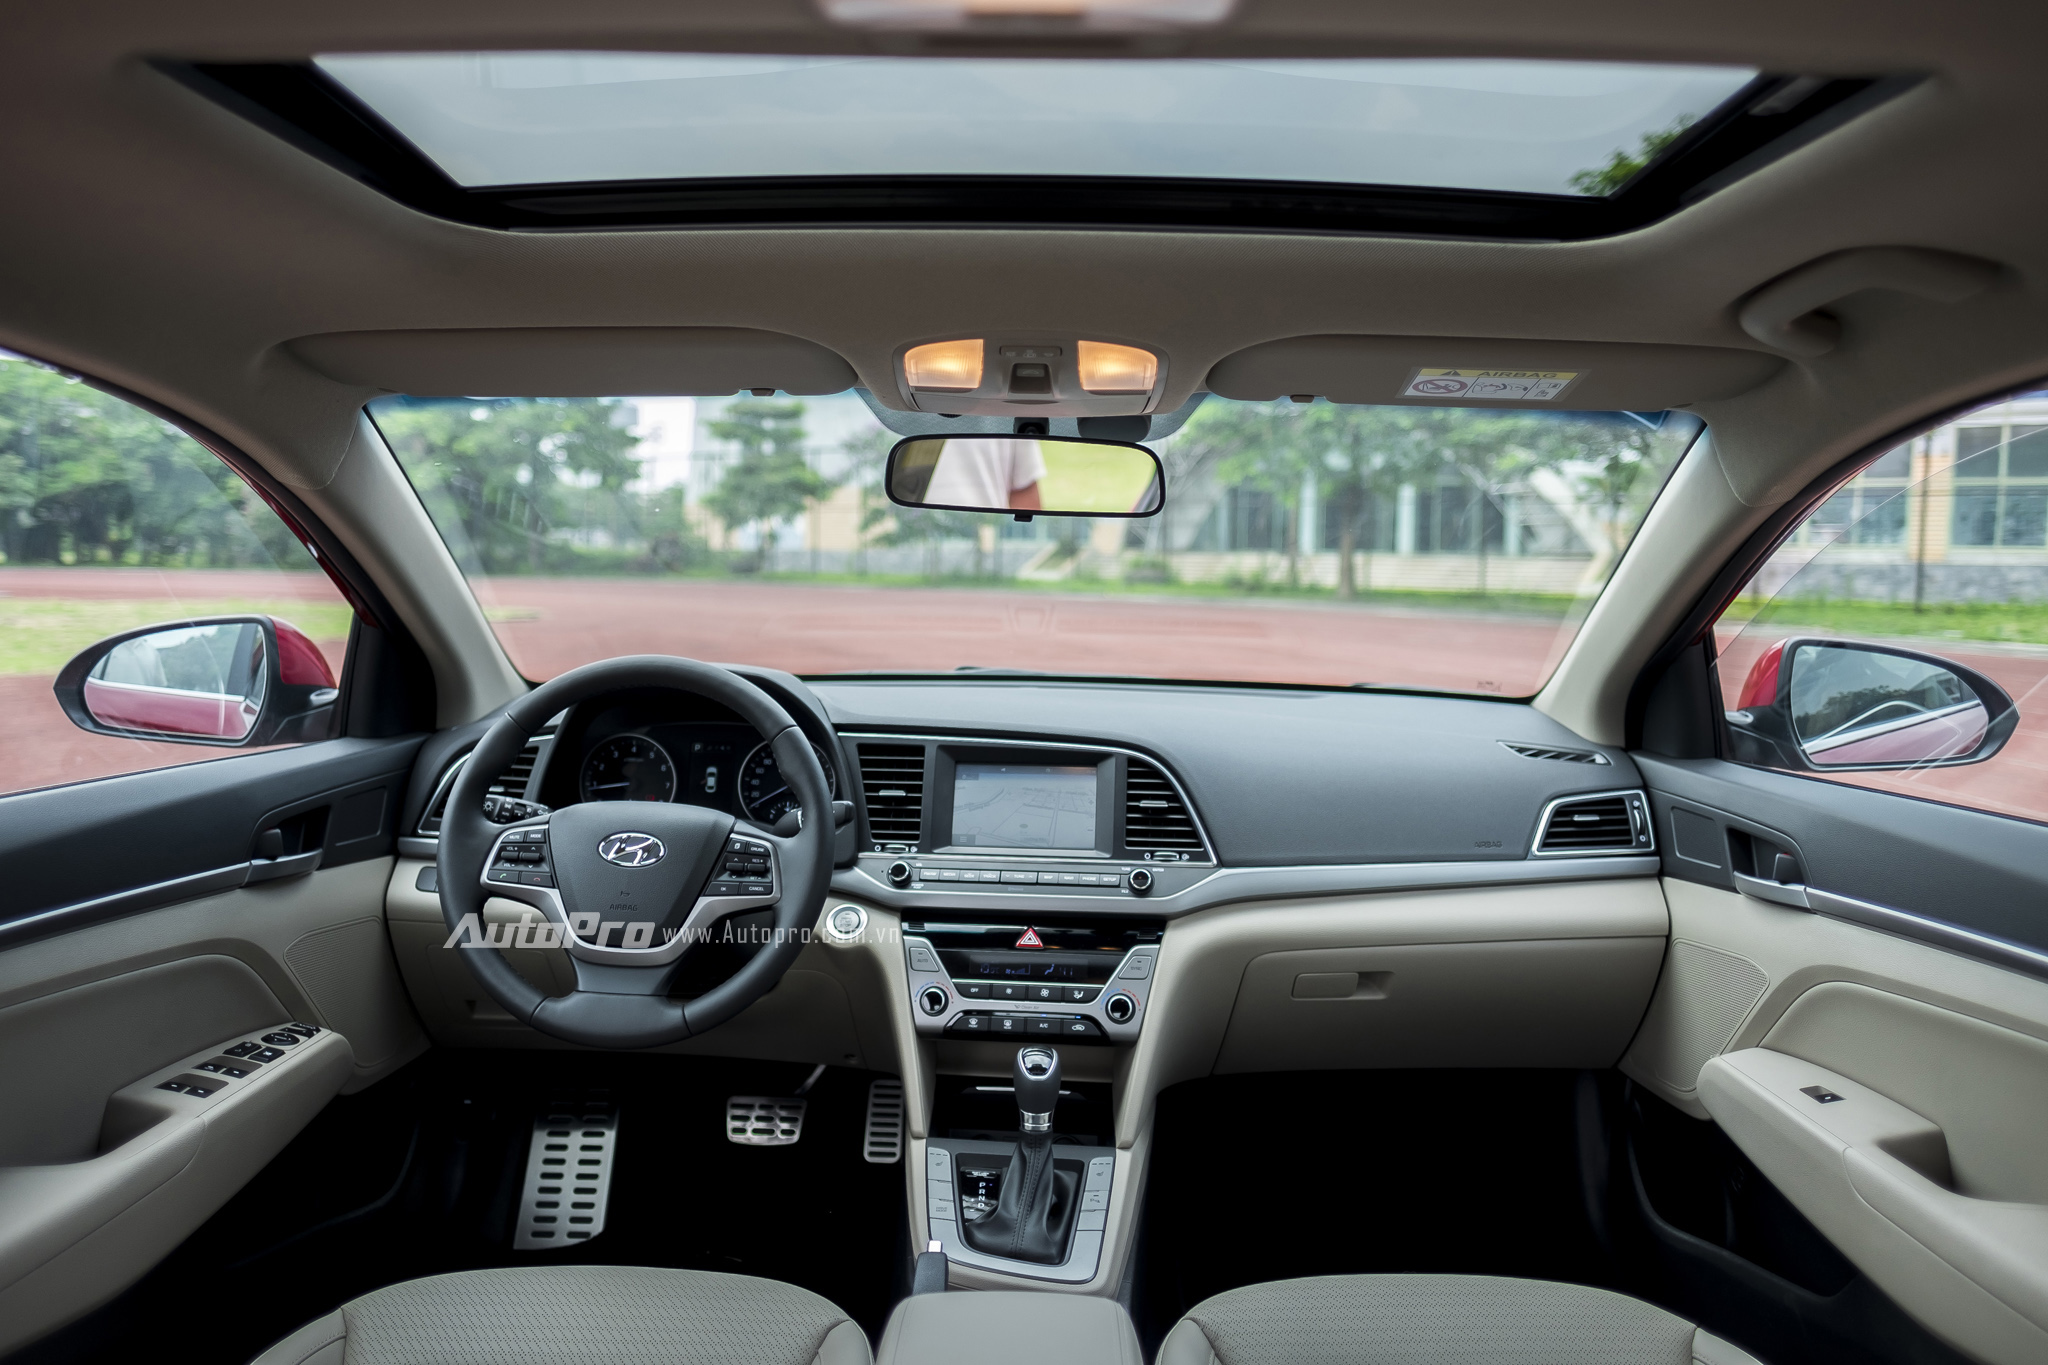 
Nội thất của Hyundai Elantra 2016 được bọc da nhiều nơi, kết hợp cùng những chi tiết bằng kim loại. Nội thất tuân thủ theo triết lý thiết kế HMI (Human Machine Interface) của Hyundai với giao diện thân thiện và dễ sử dụng.
